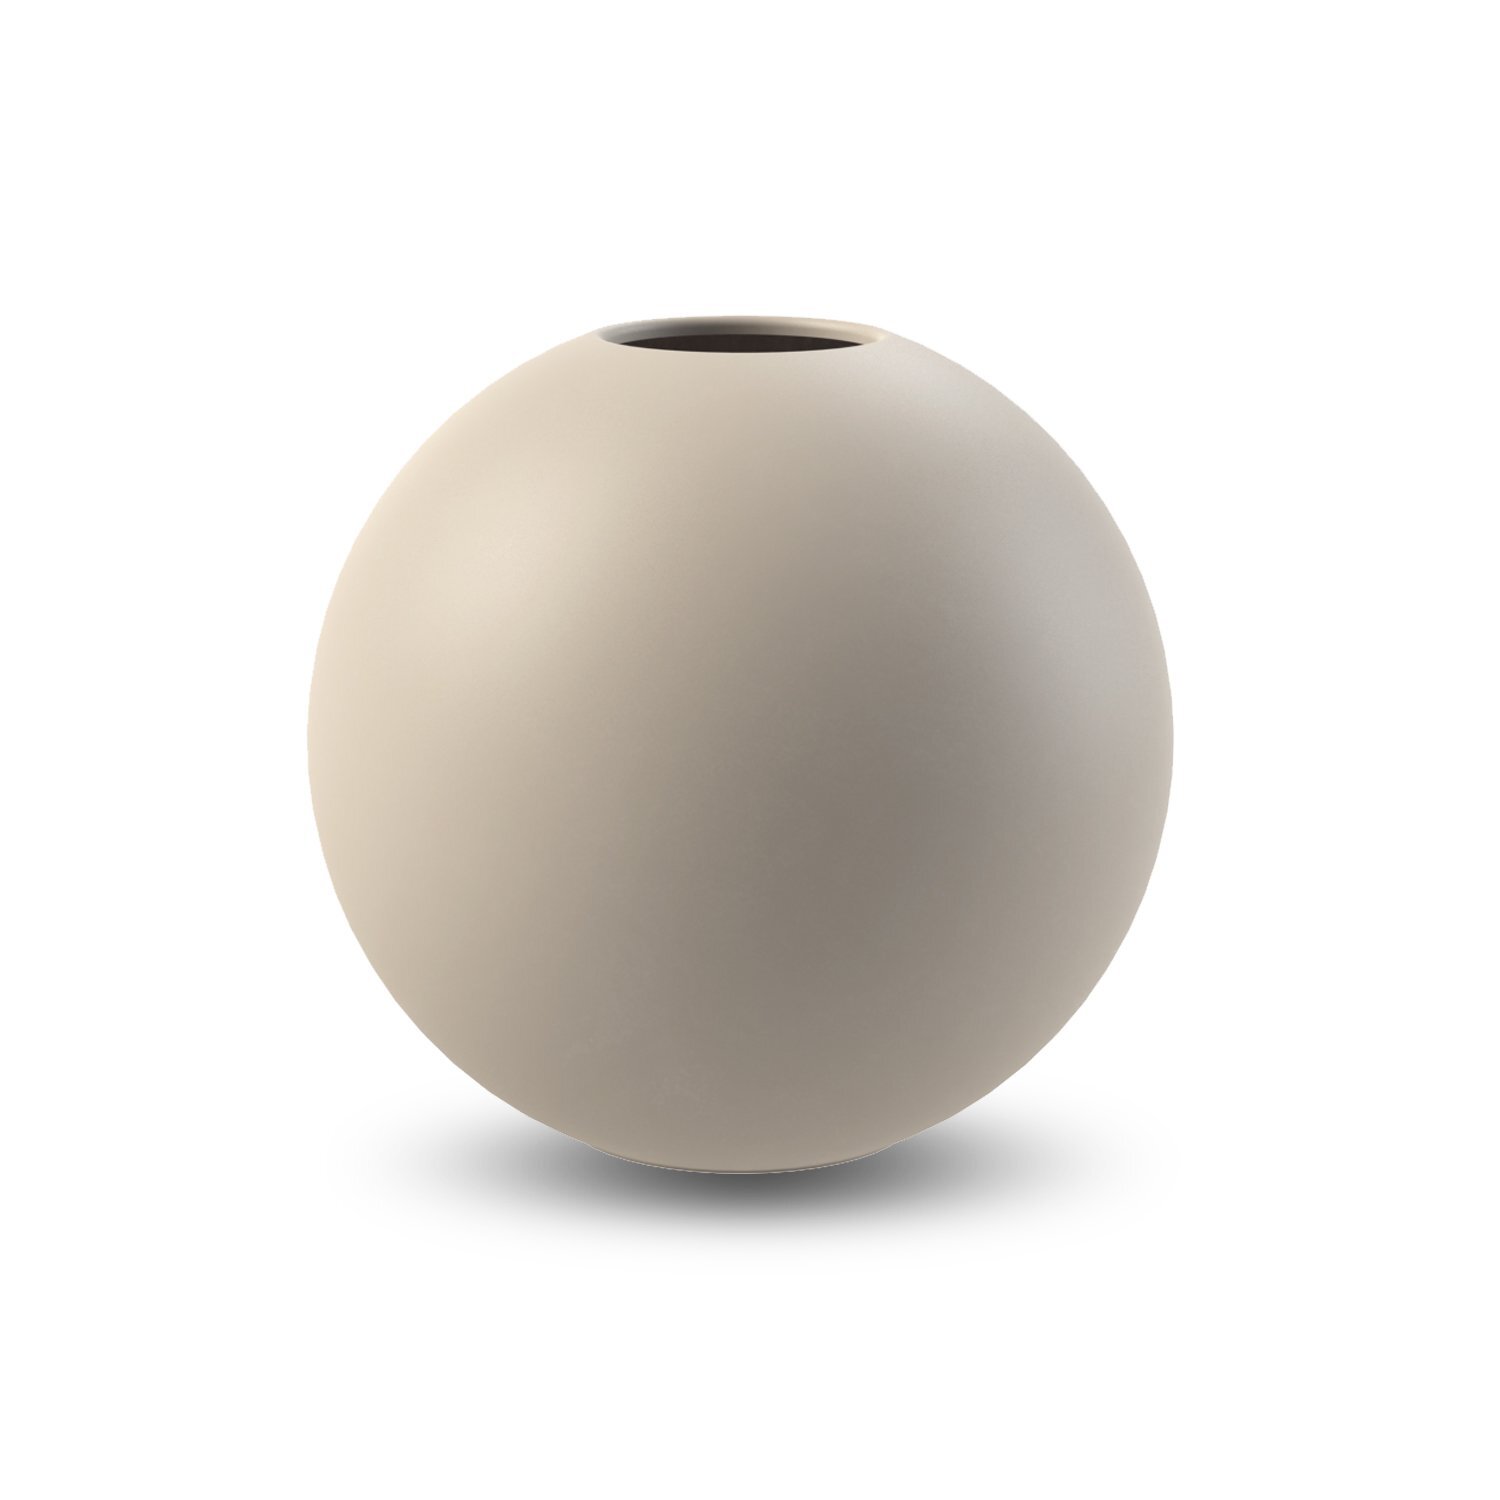 Ball vase, Sand, 20 cm.jpg